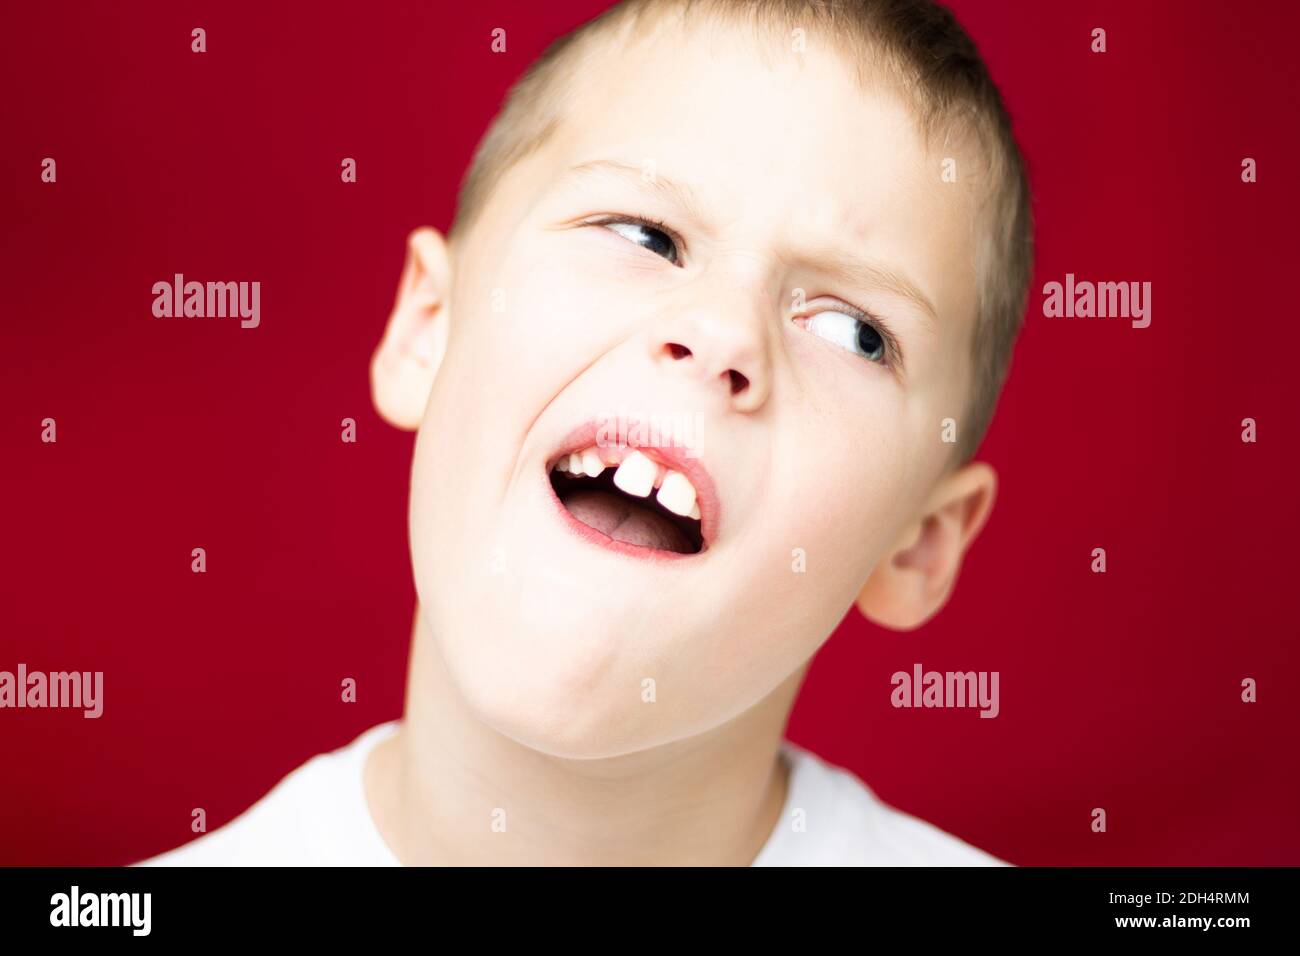 Ragazzo adolescente 7-10 mostra un posto da un dente perso su sfondo rosso Foto Stock